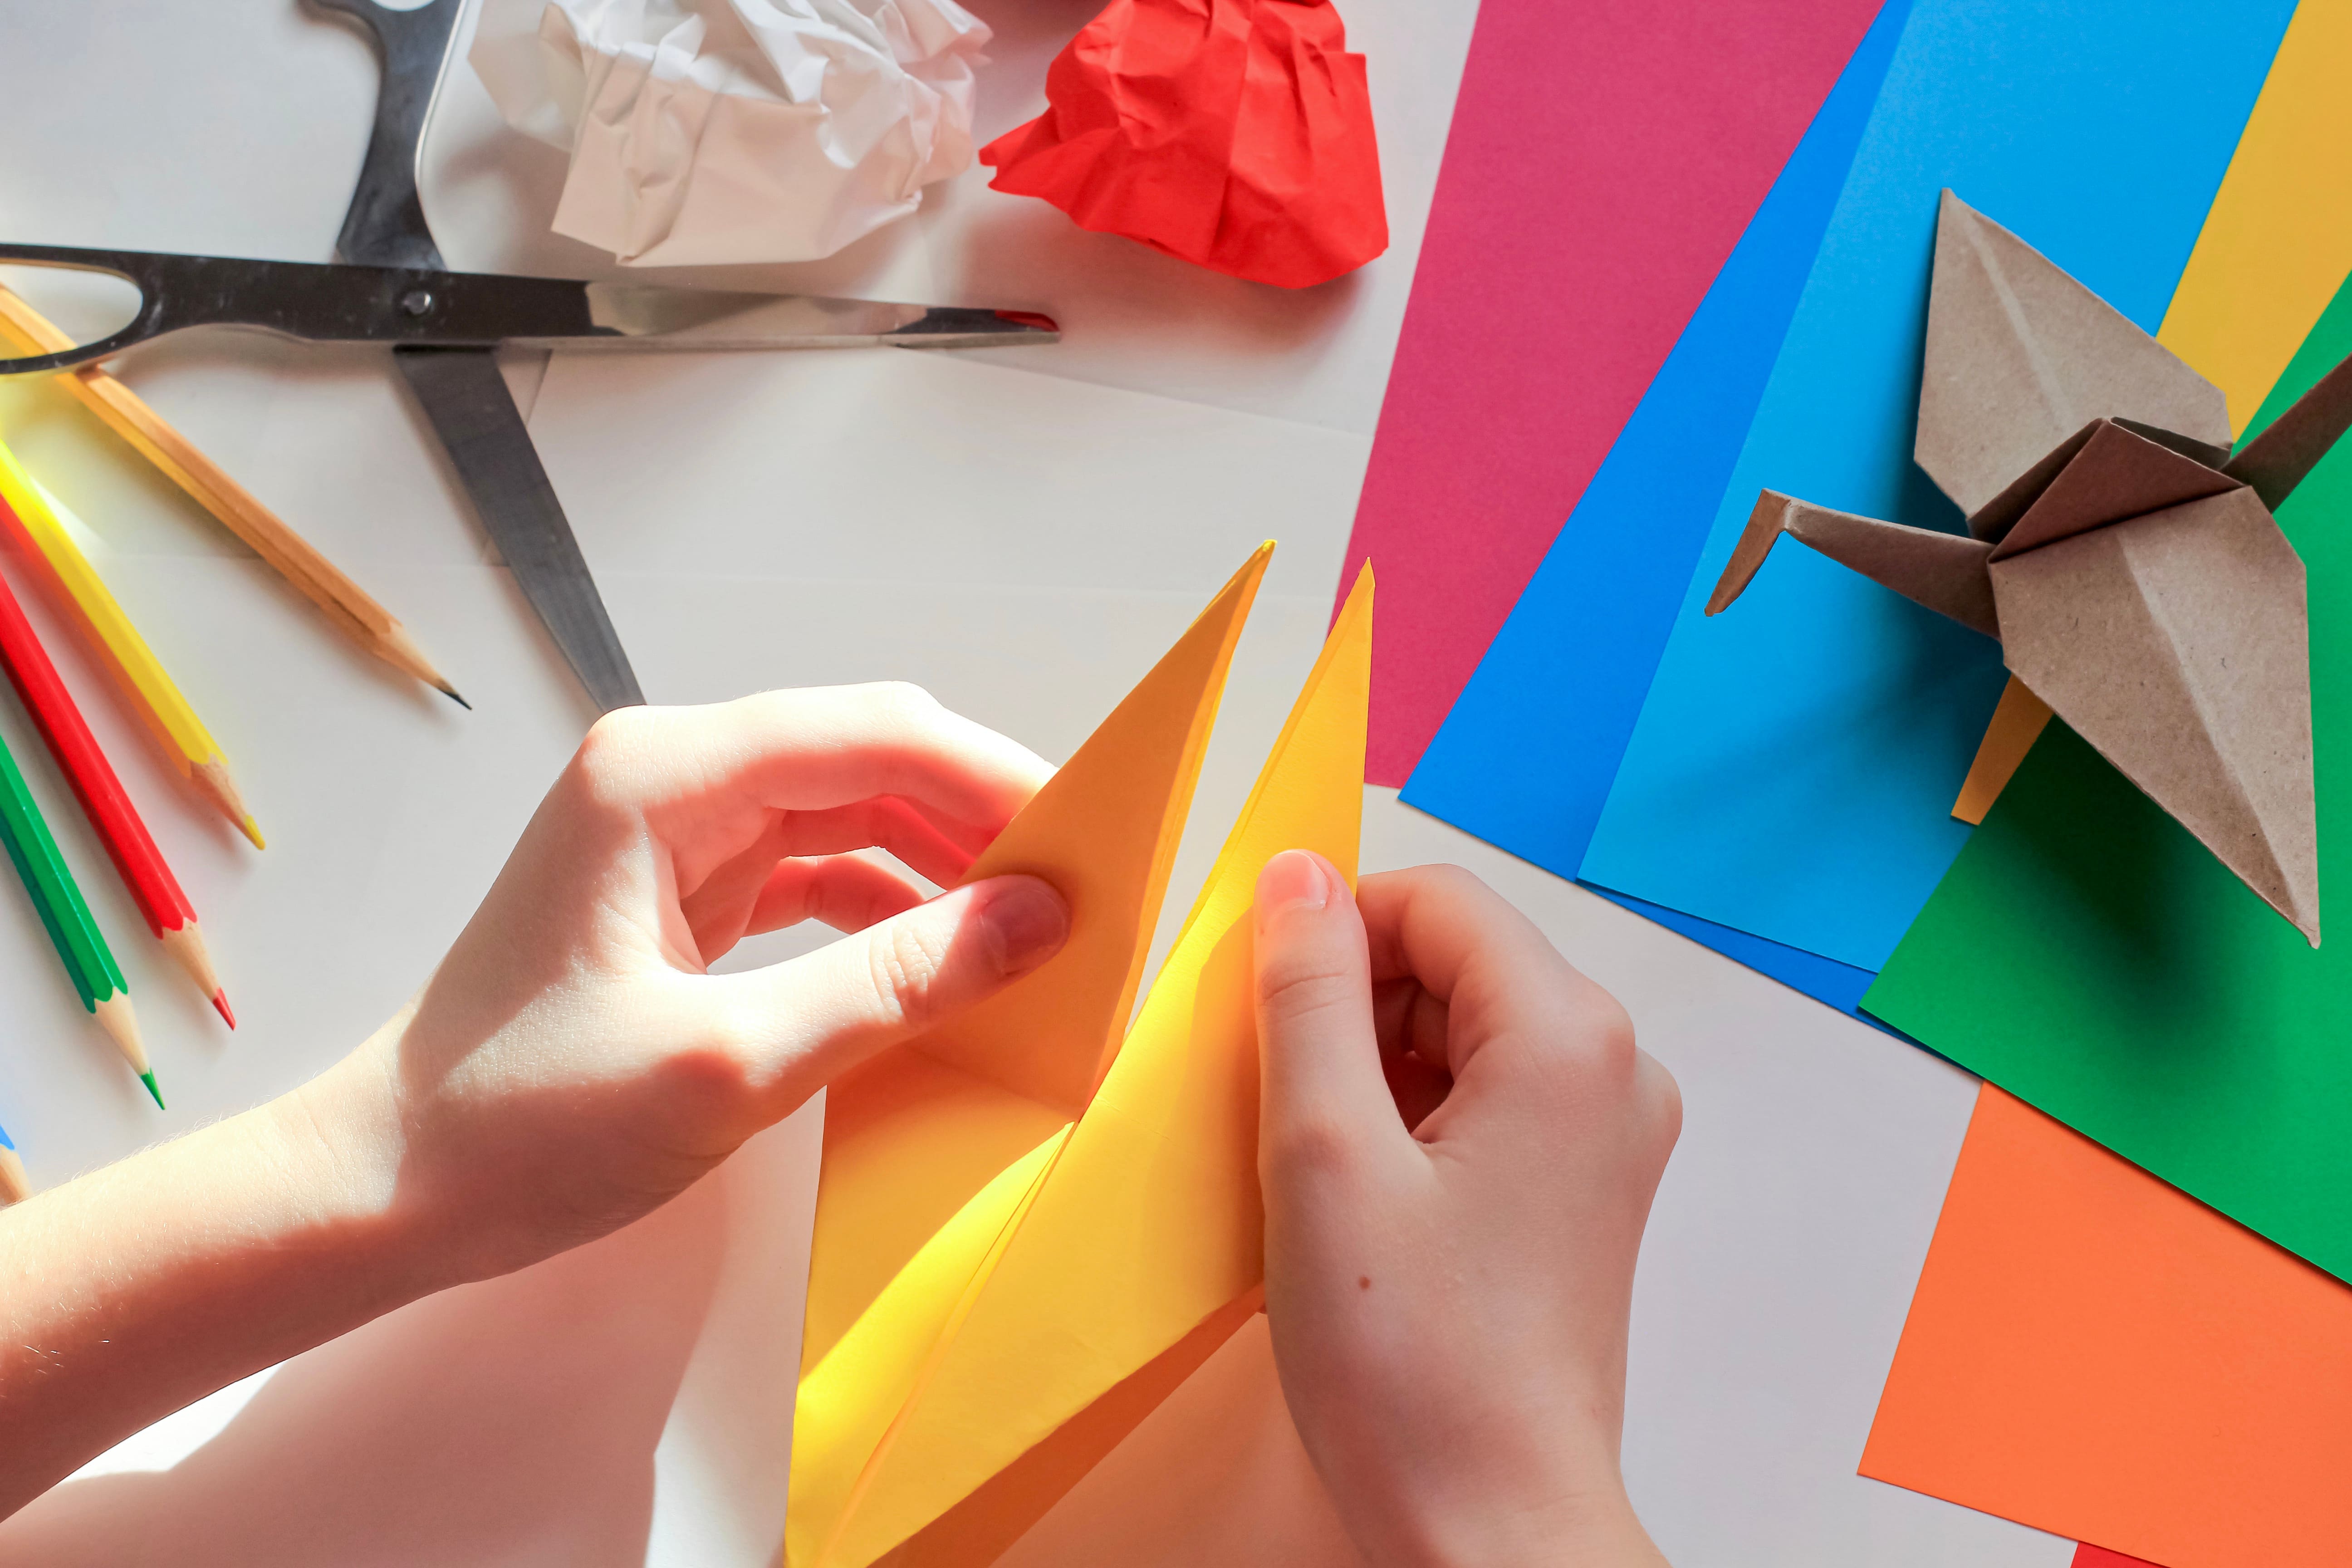 Desena edició d’1 origami 1 euro, la campanya solidària de la Fundació MGC